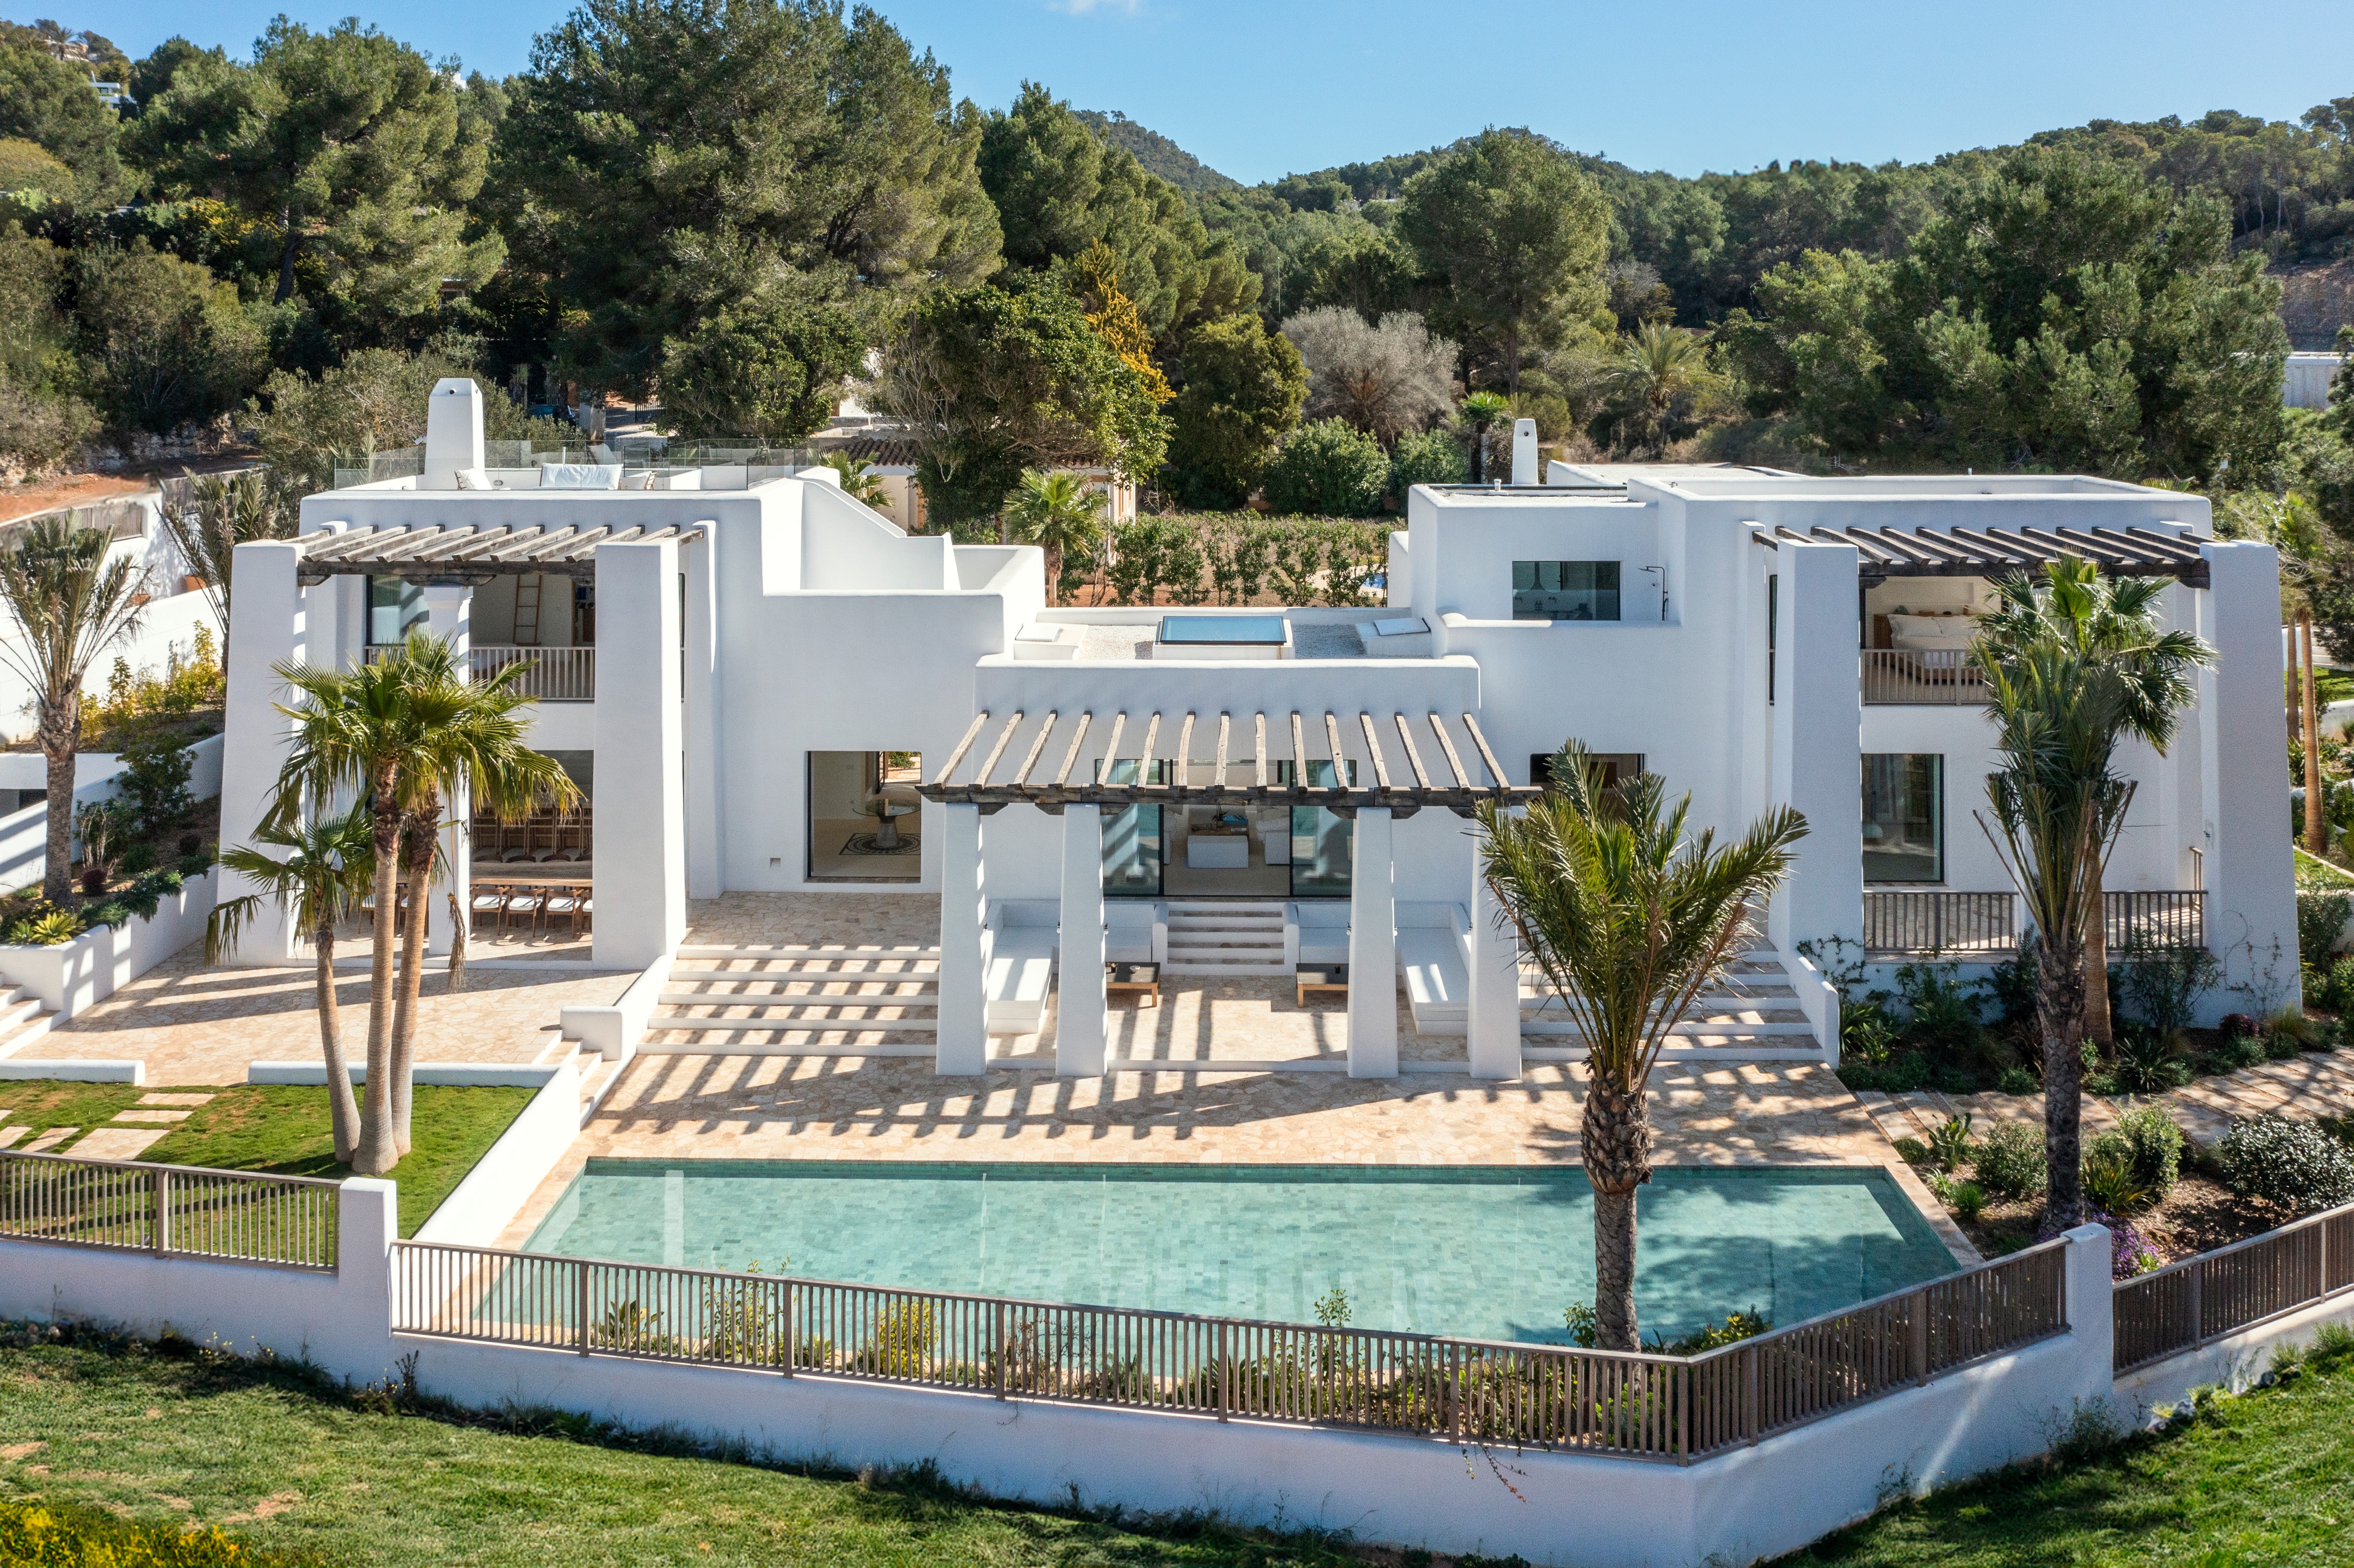 Imponente Villa Blakstad muy cerca de la ciudad de Ibiza